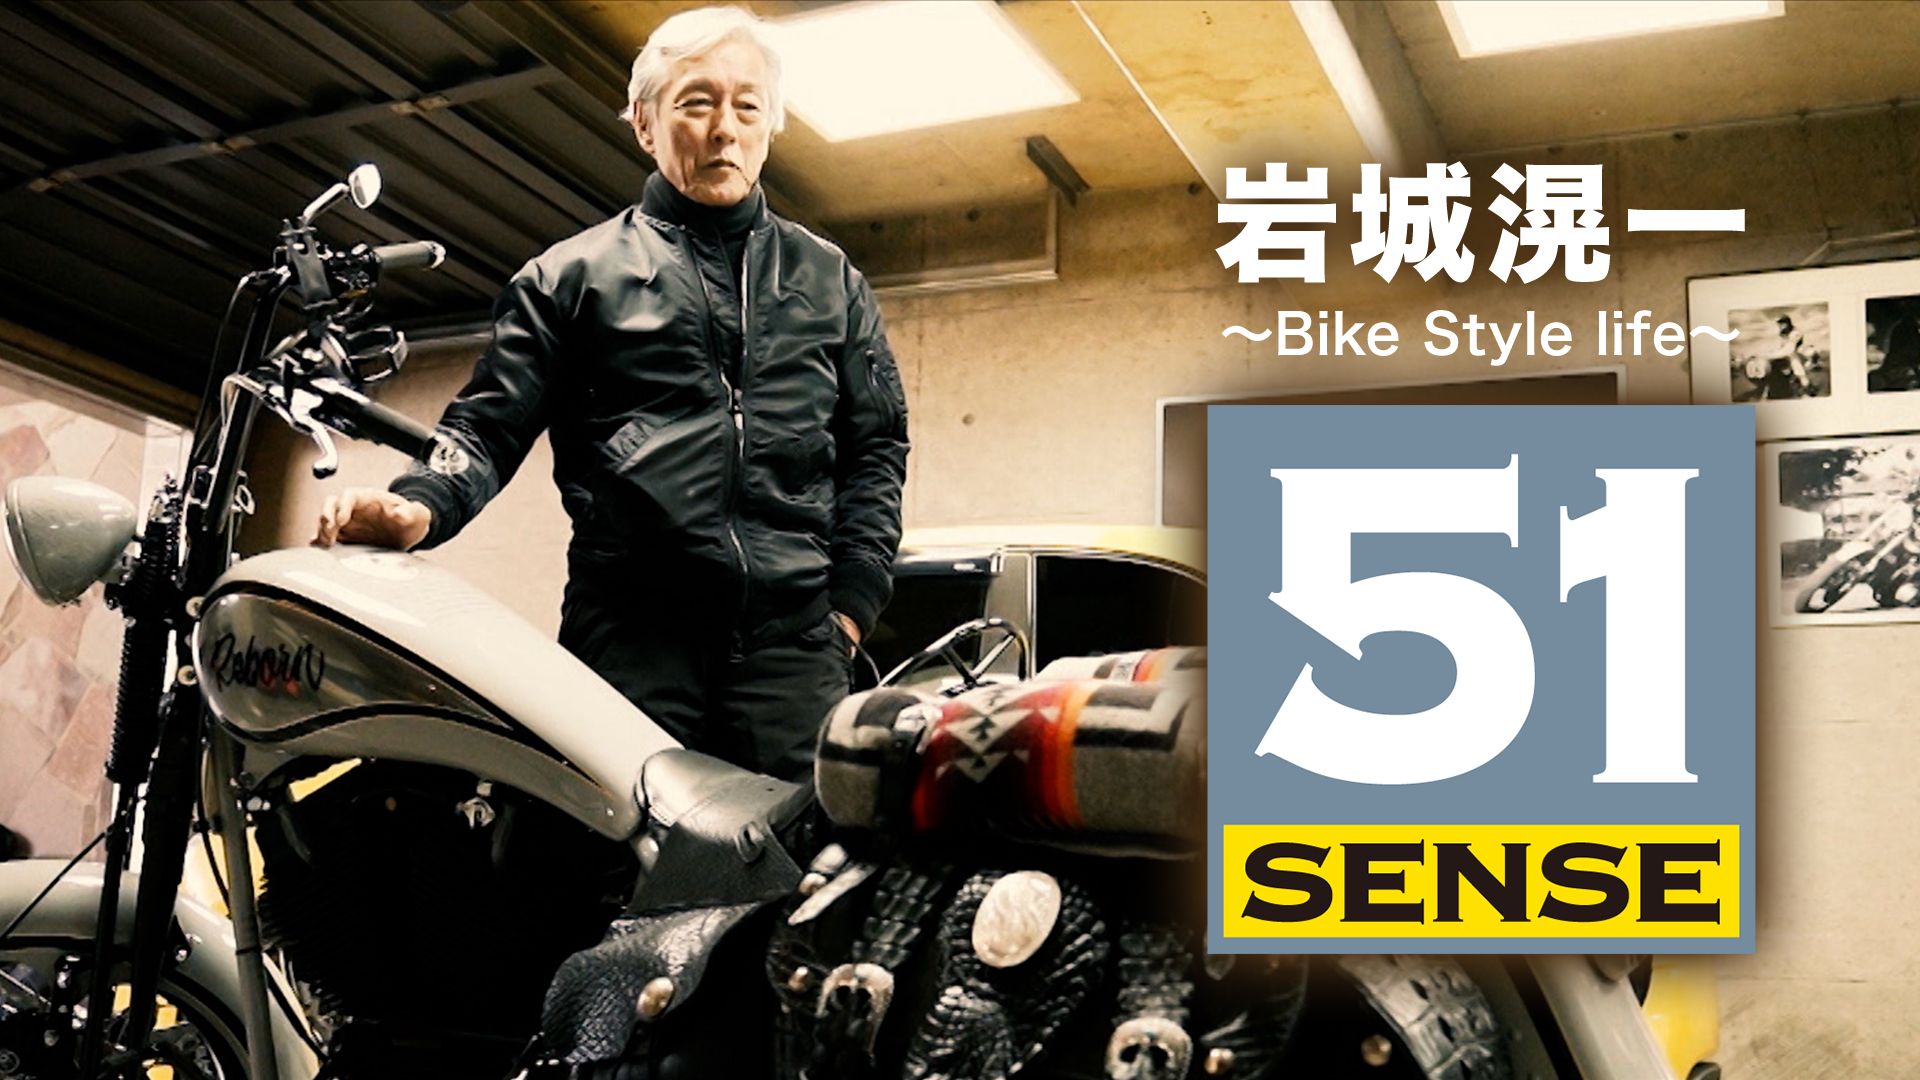 岩城滉一 〜Bike Style life〜51 SENSE